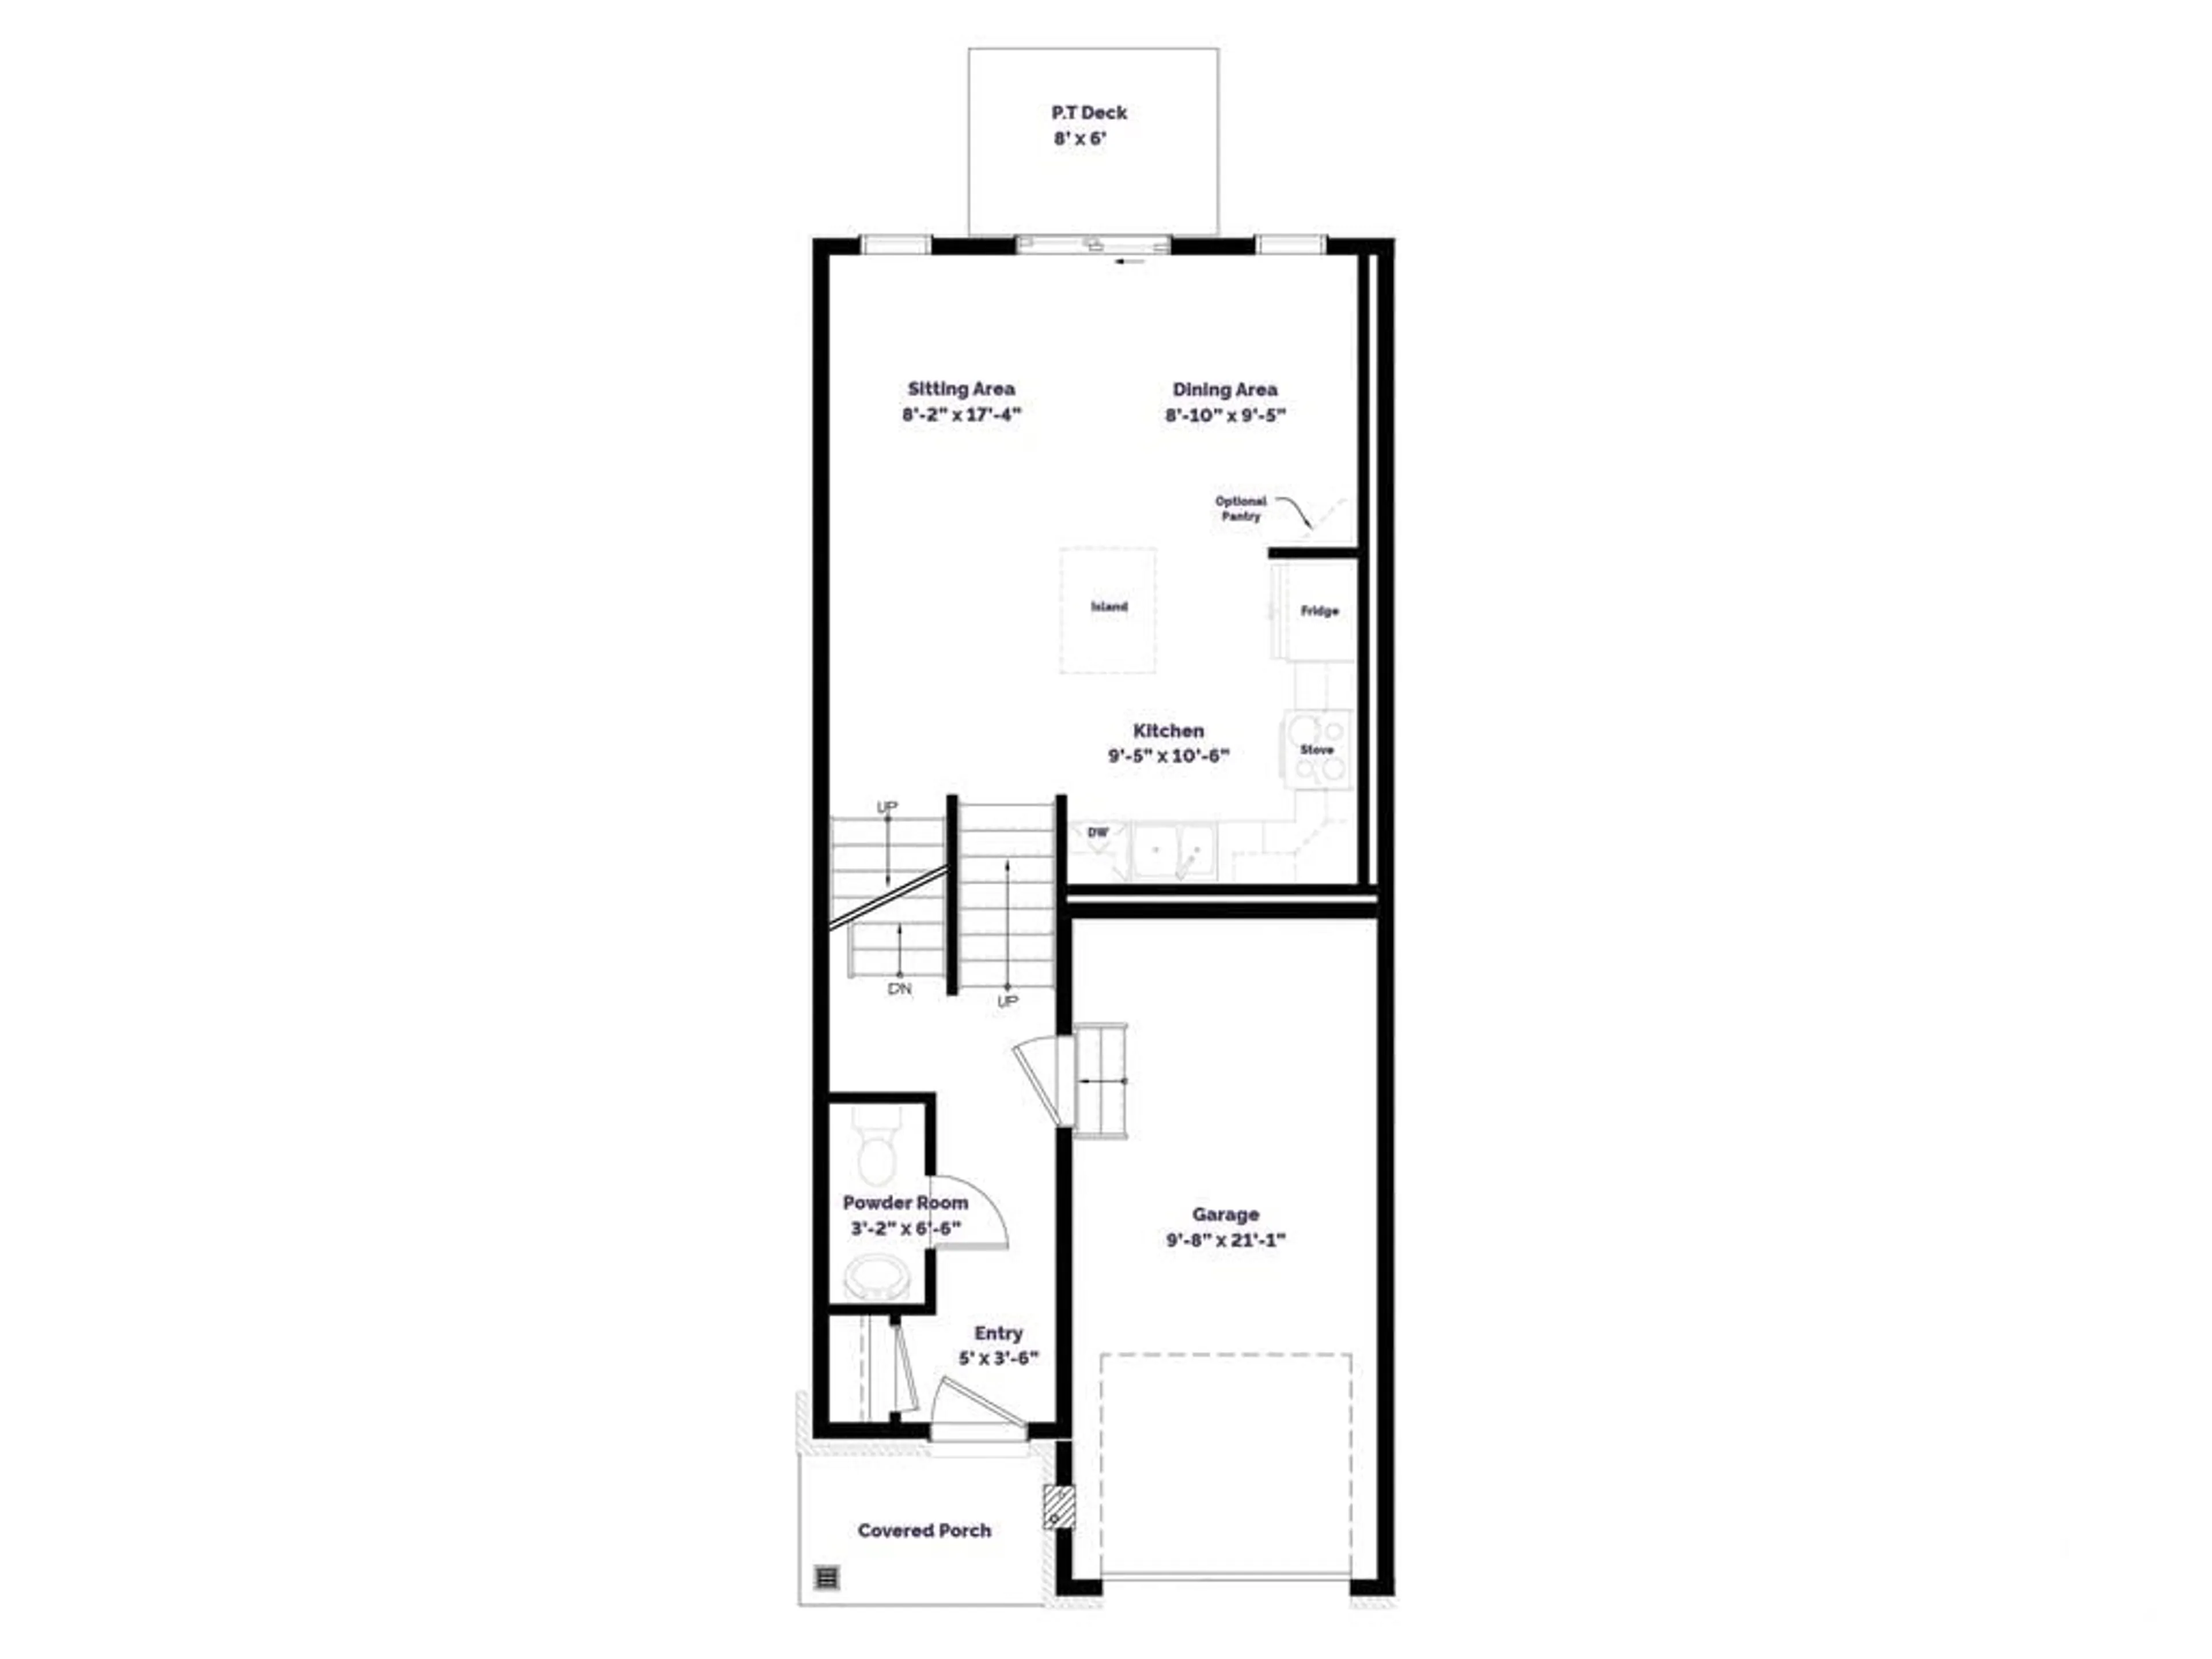 Floor plan for 751 ST JOHN St, Merrickville Ontario K0G 1N0